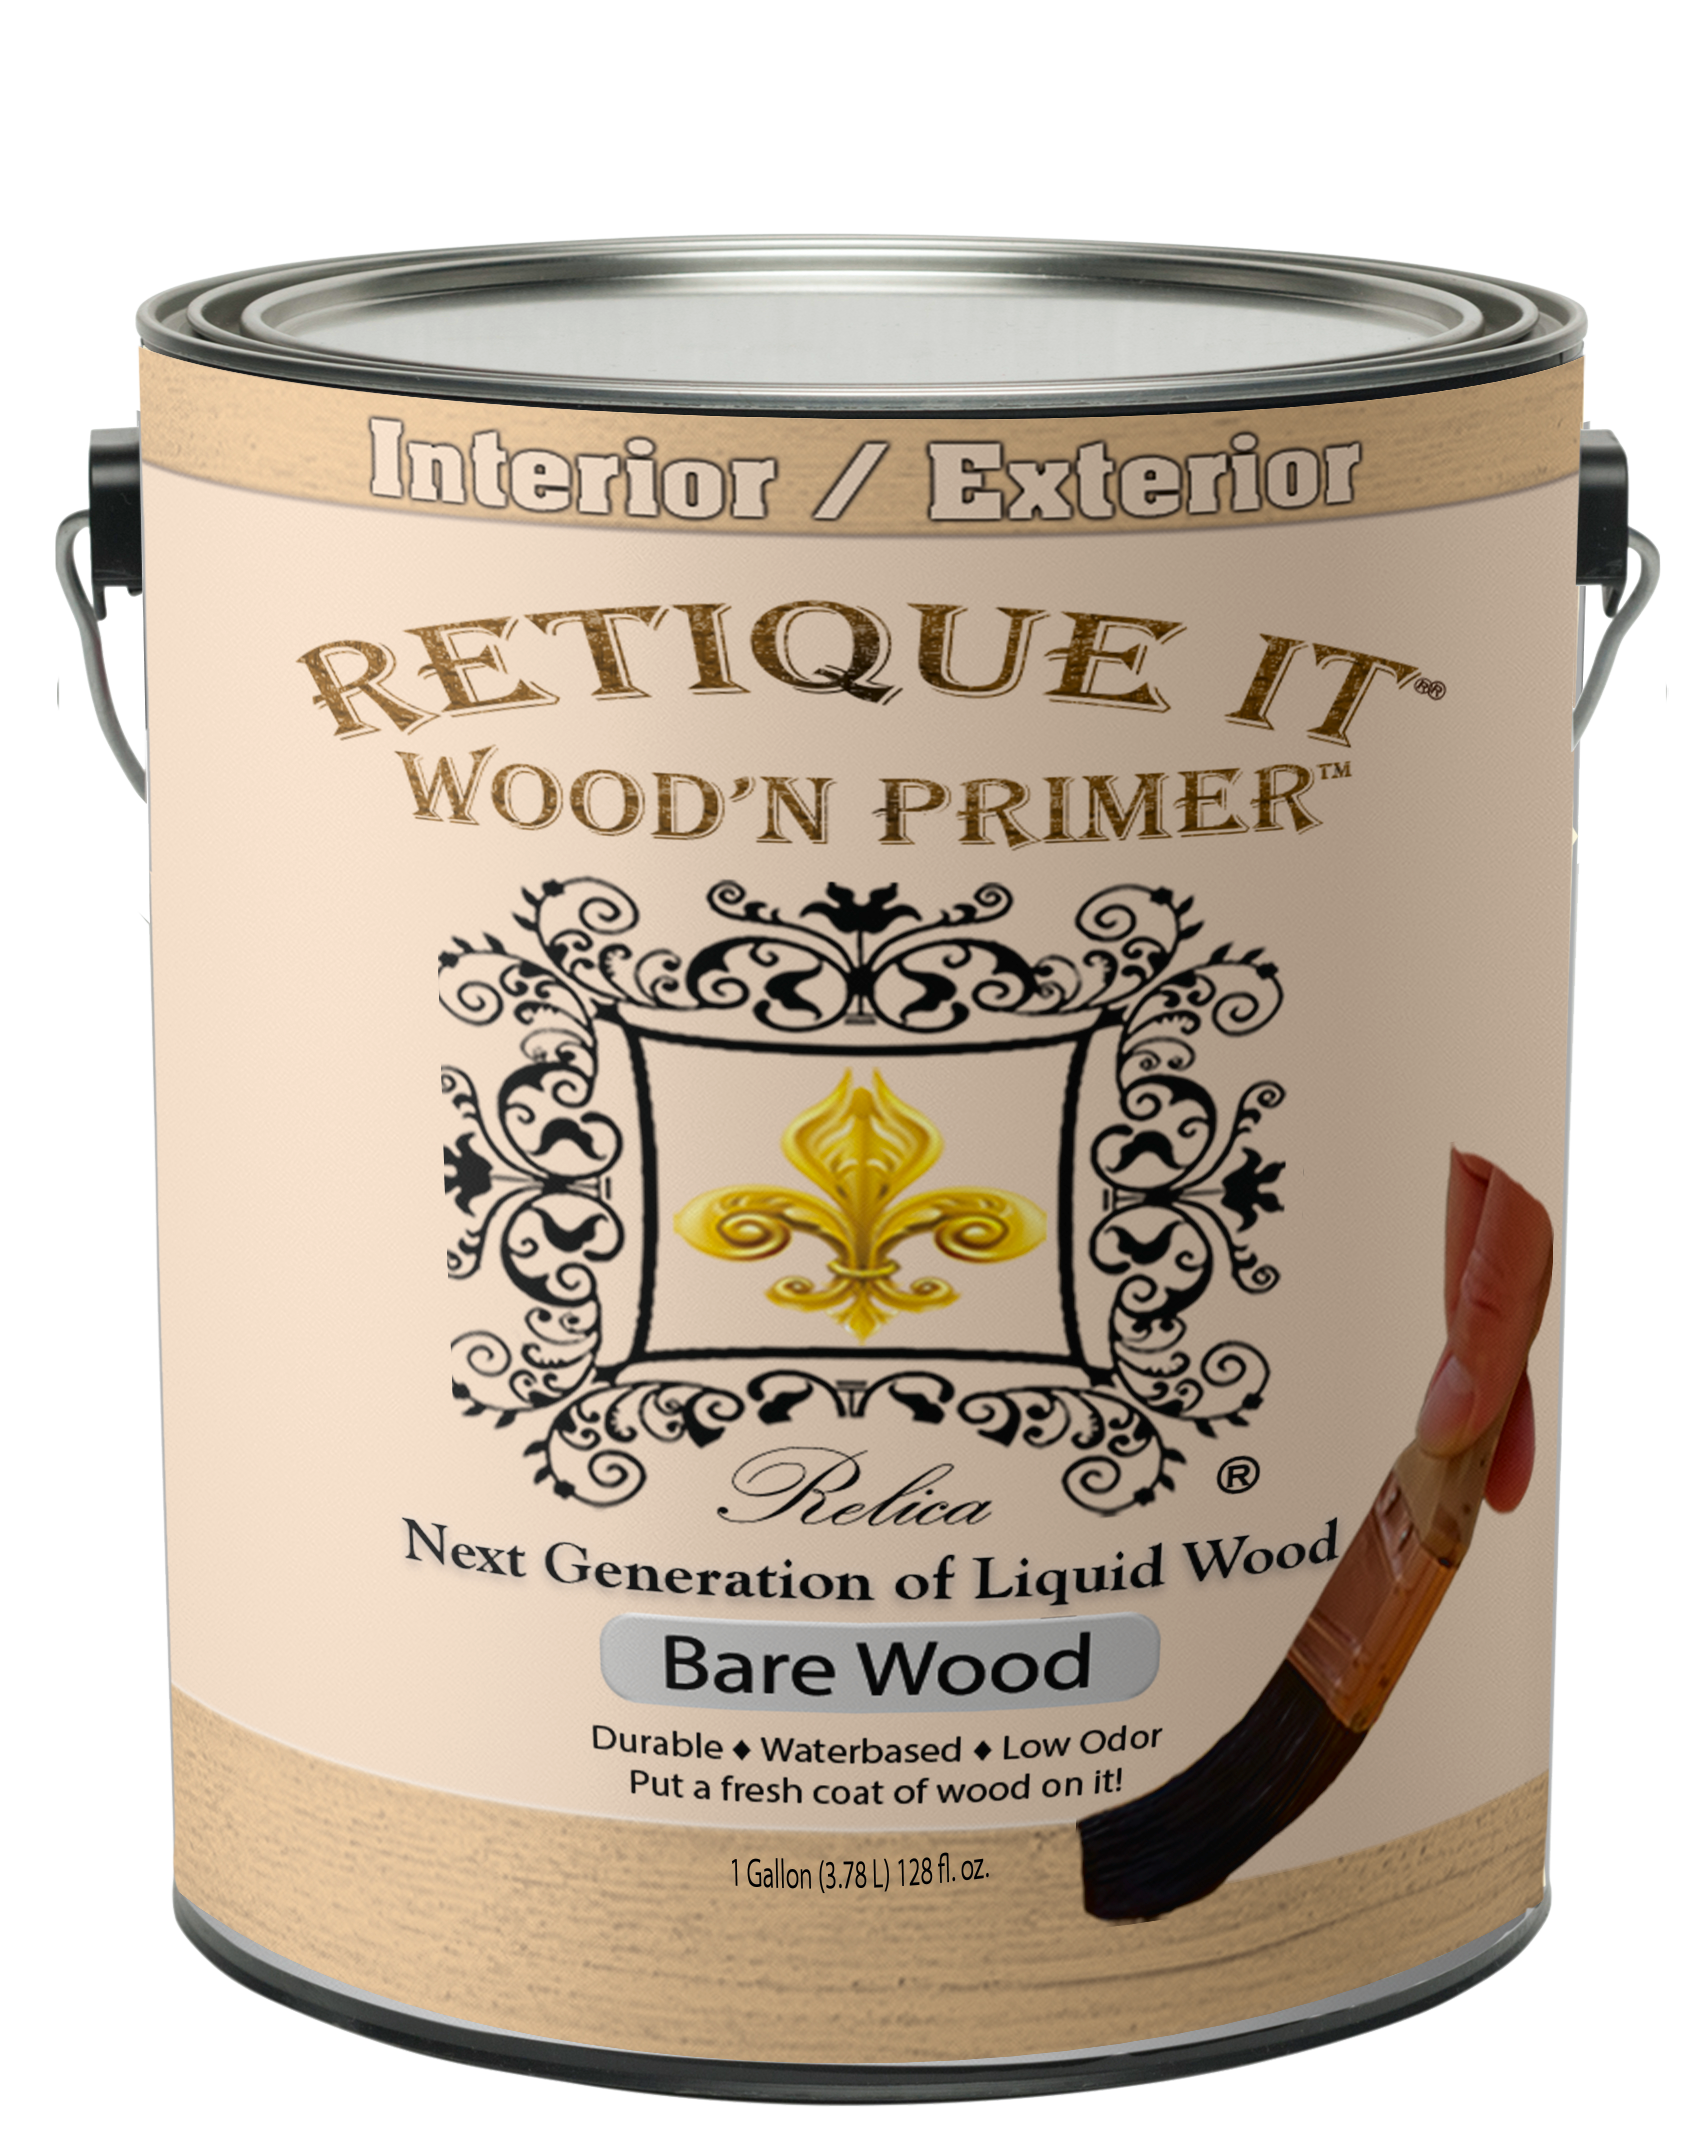 Wood'n Primer | Retique It Shop Pint